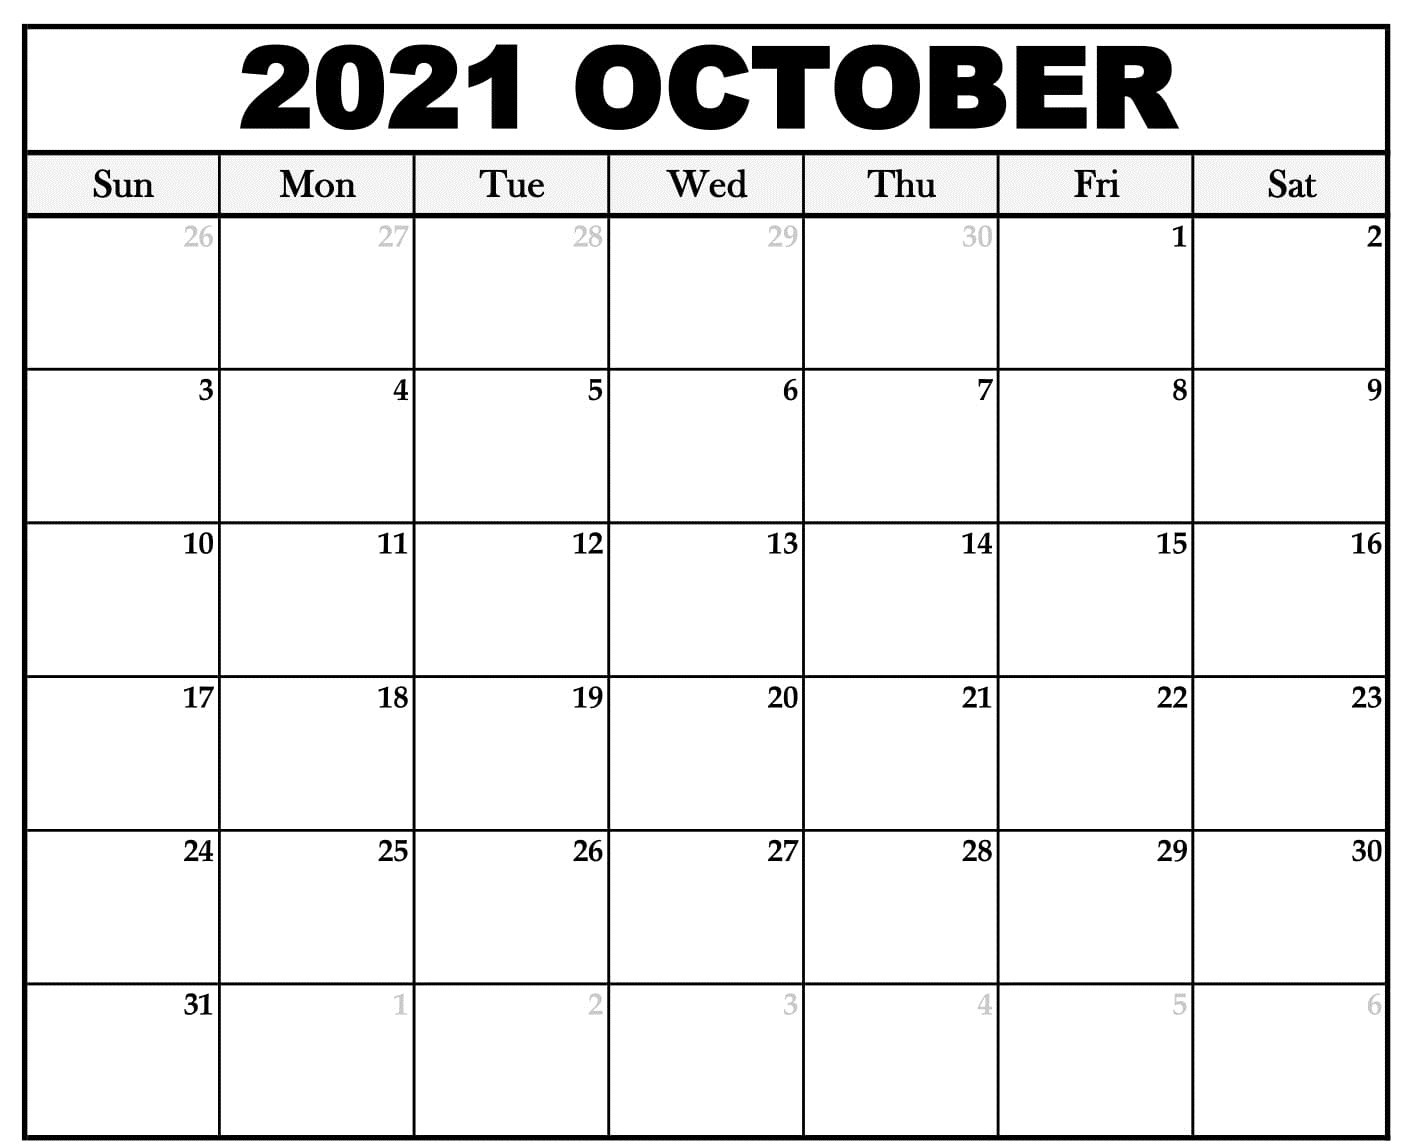 27 октябрь 2021. Календарь октябрь 2021. Календарь на октябрь 2021 года. Календарь октябрь ноябрь 2021. Календарь сентябрь октябрь 2021.